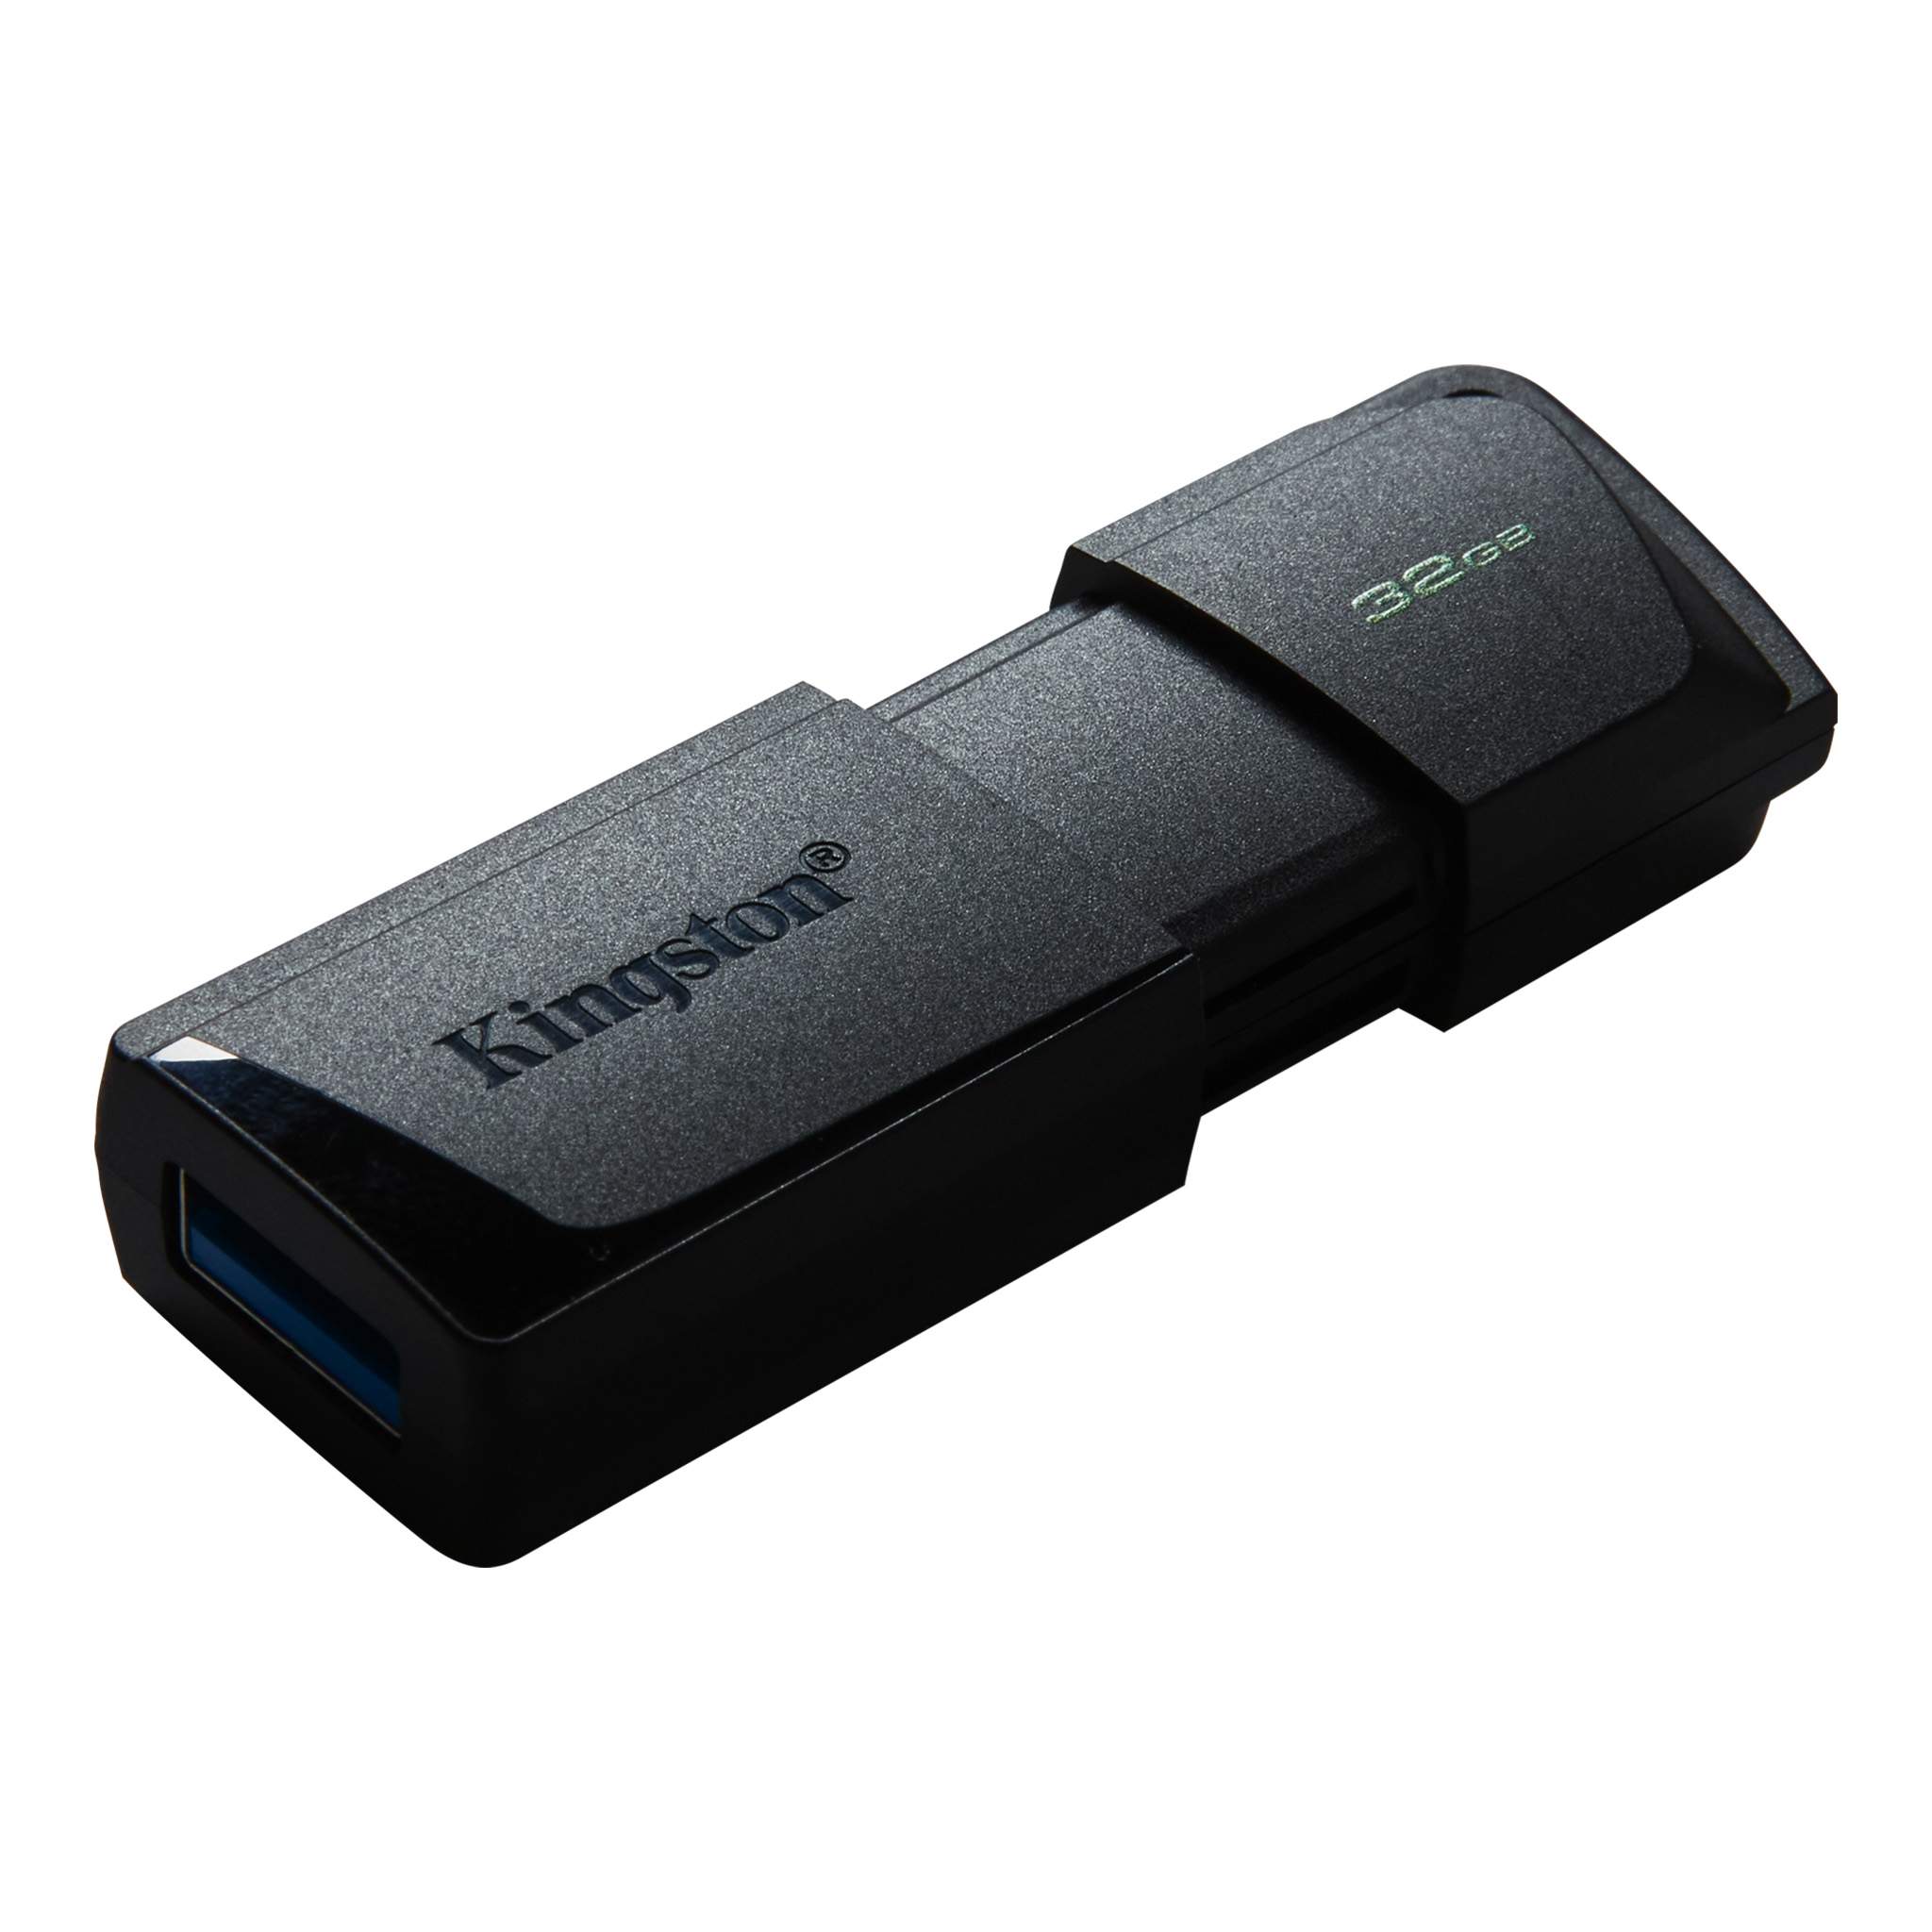 Memoria USB Atvio 32 GB Negro